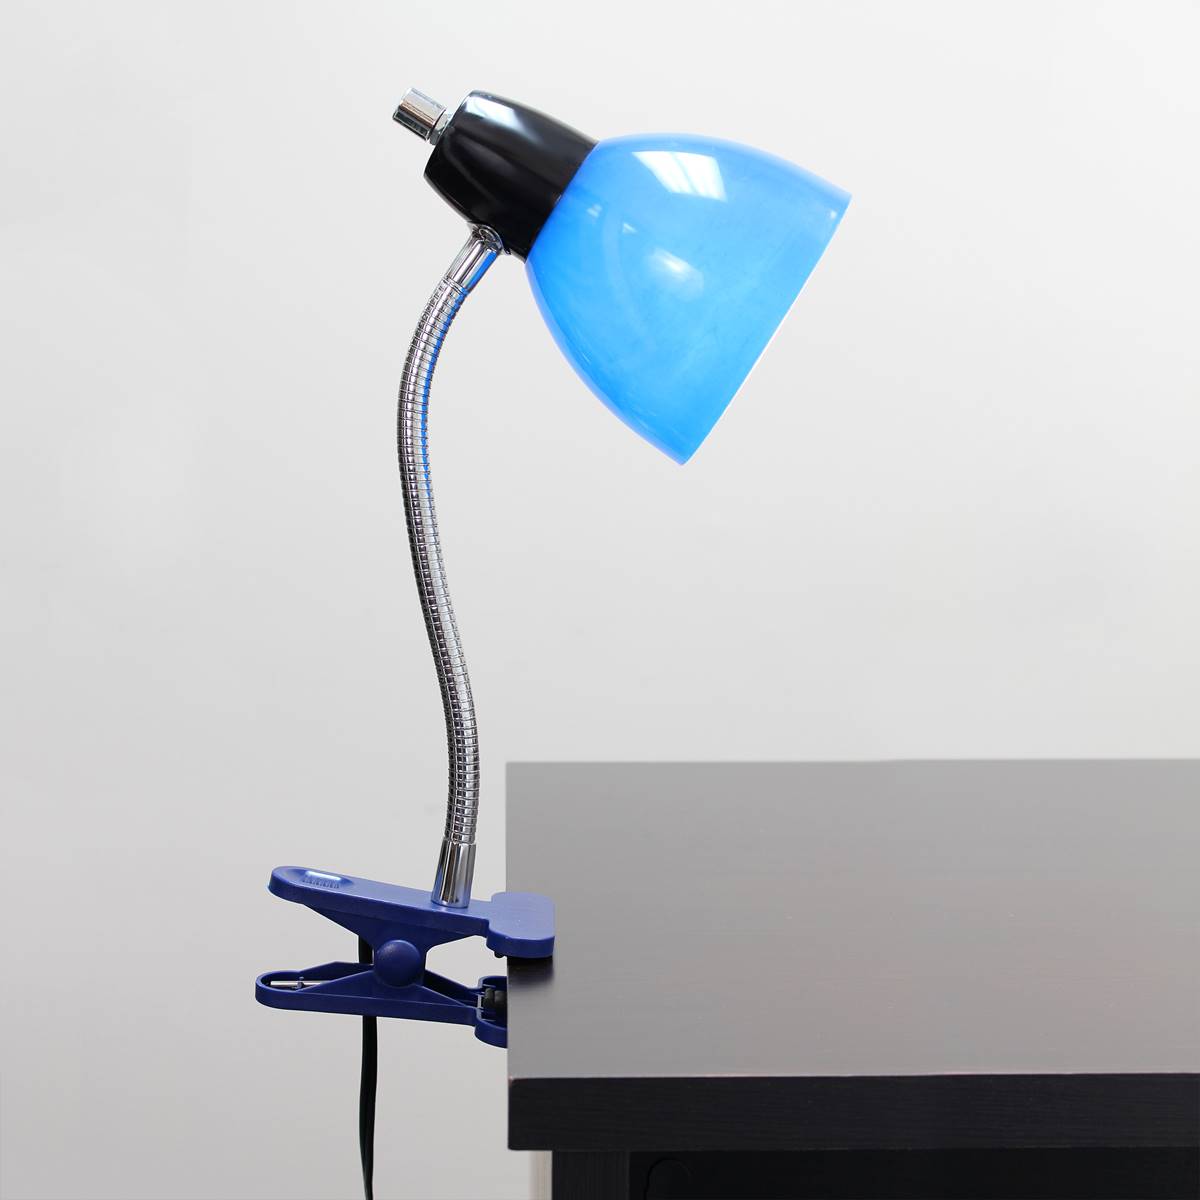 LimeLights Adjustable Clip Lamp Light